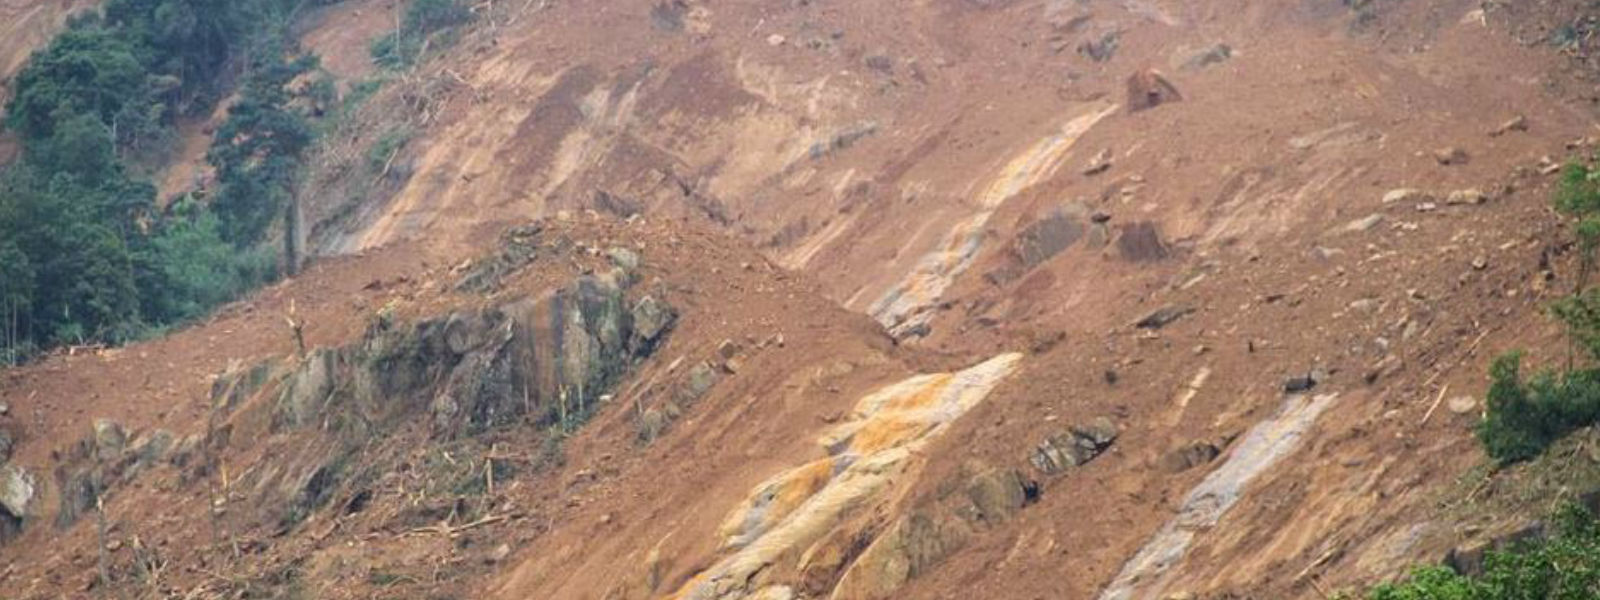 தொடங்வல பகுதியில் ஏற்பட்ட மண்சரிவு தொடர்பில் ஆய்வு